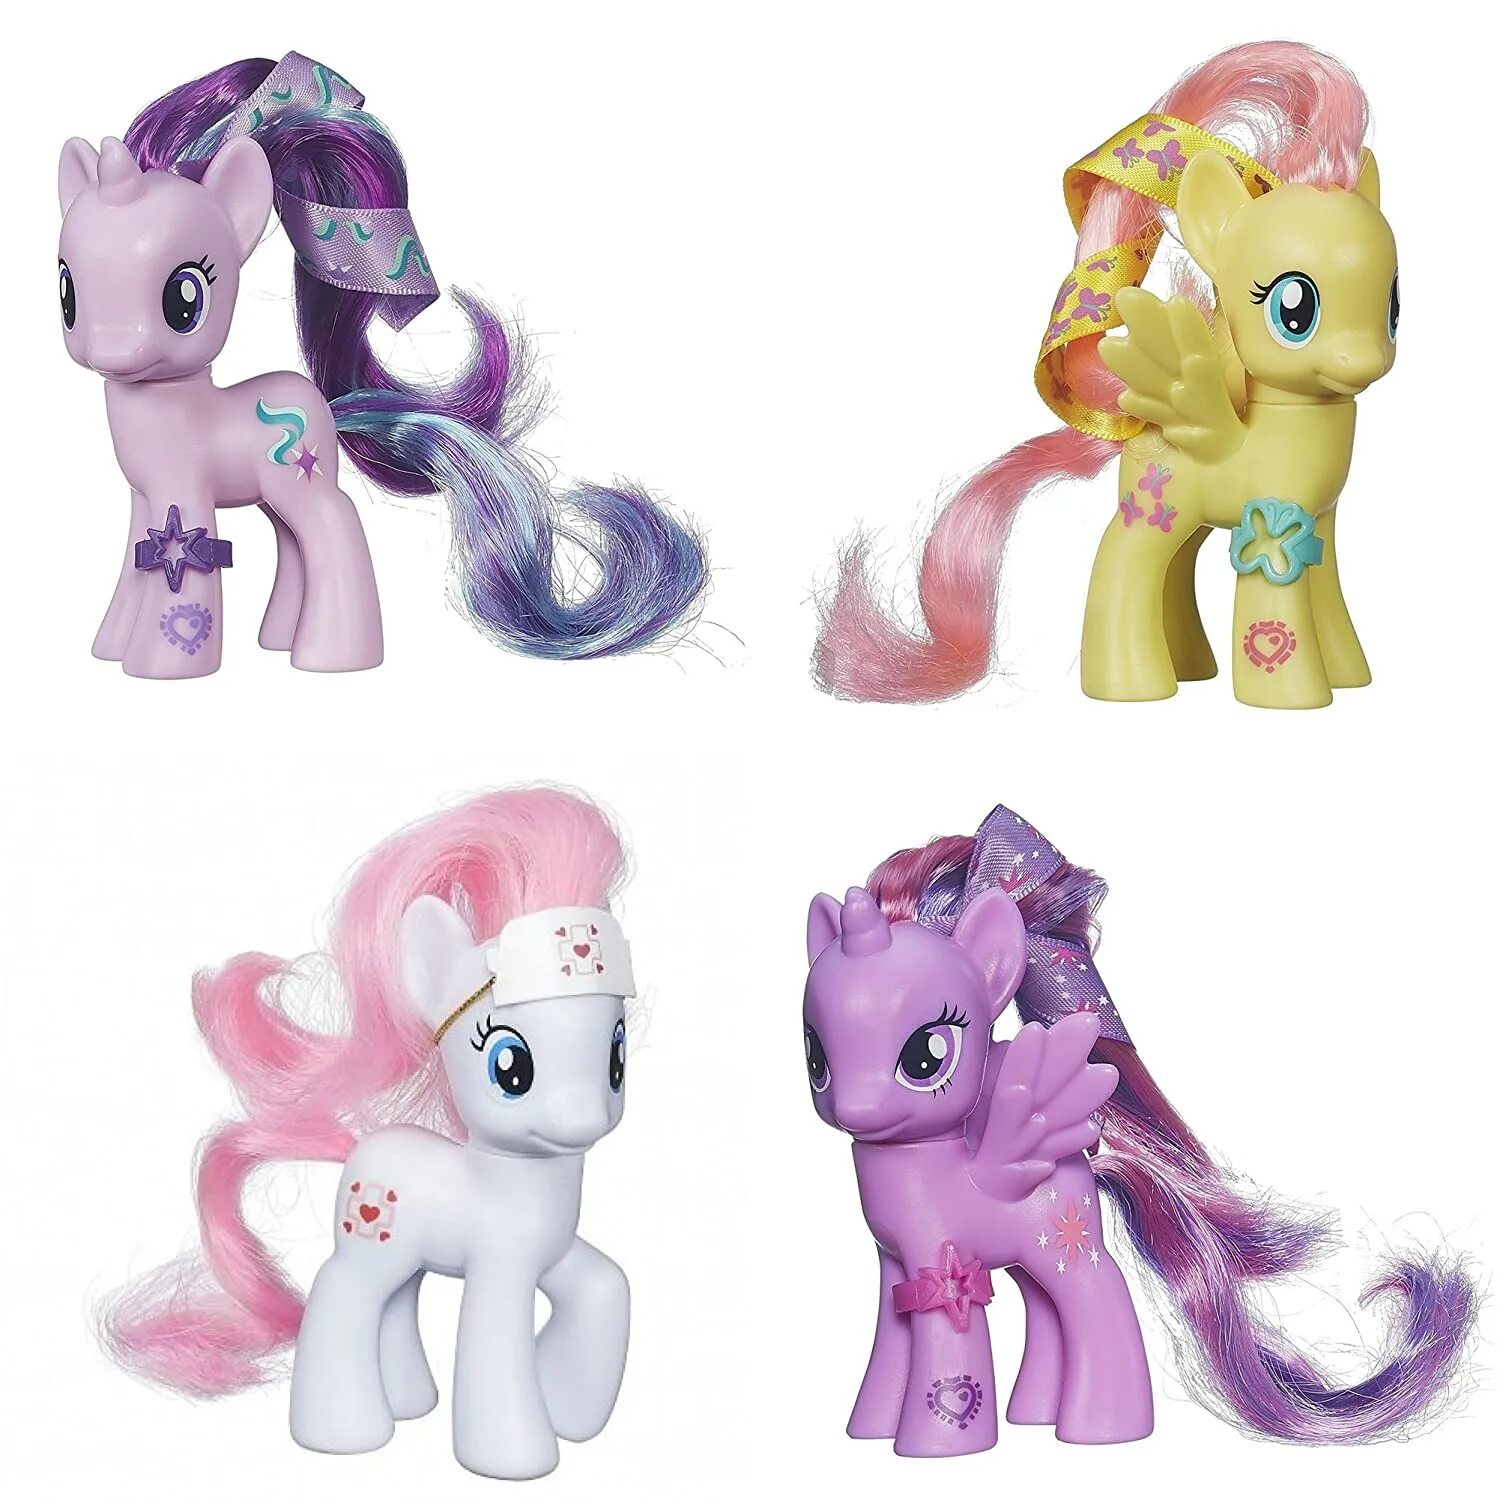 Pony celebration. My little Pony Starlight игрушка. Хасбро игрушки пони. My little Pony игрушки Старлайт. Свит Сонг пони.